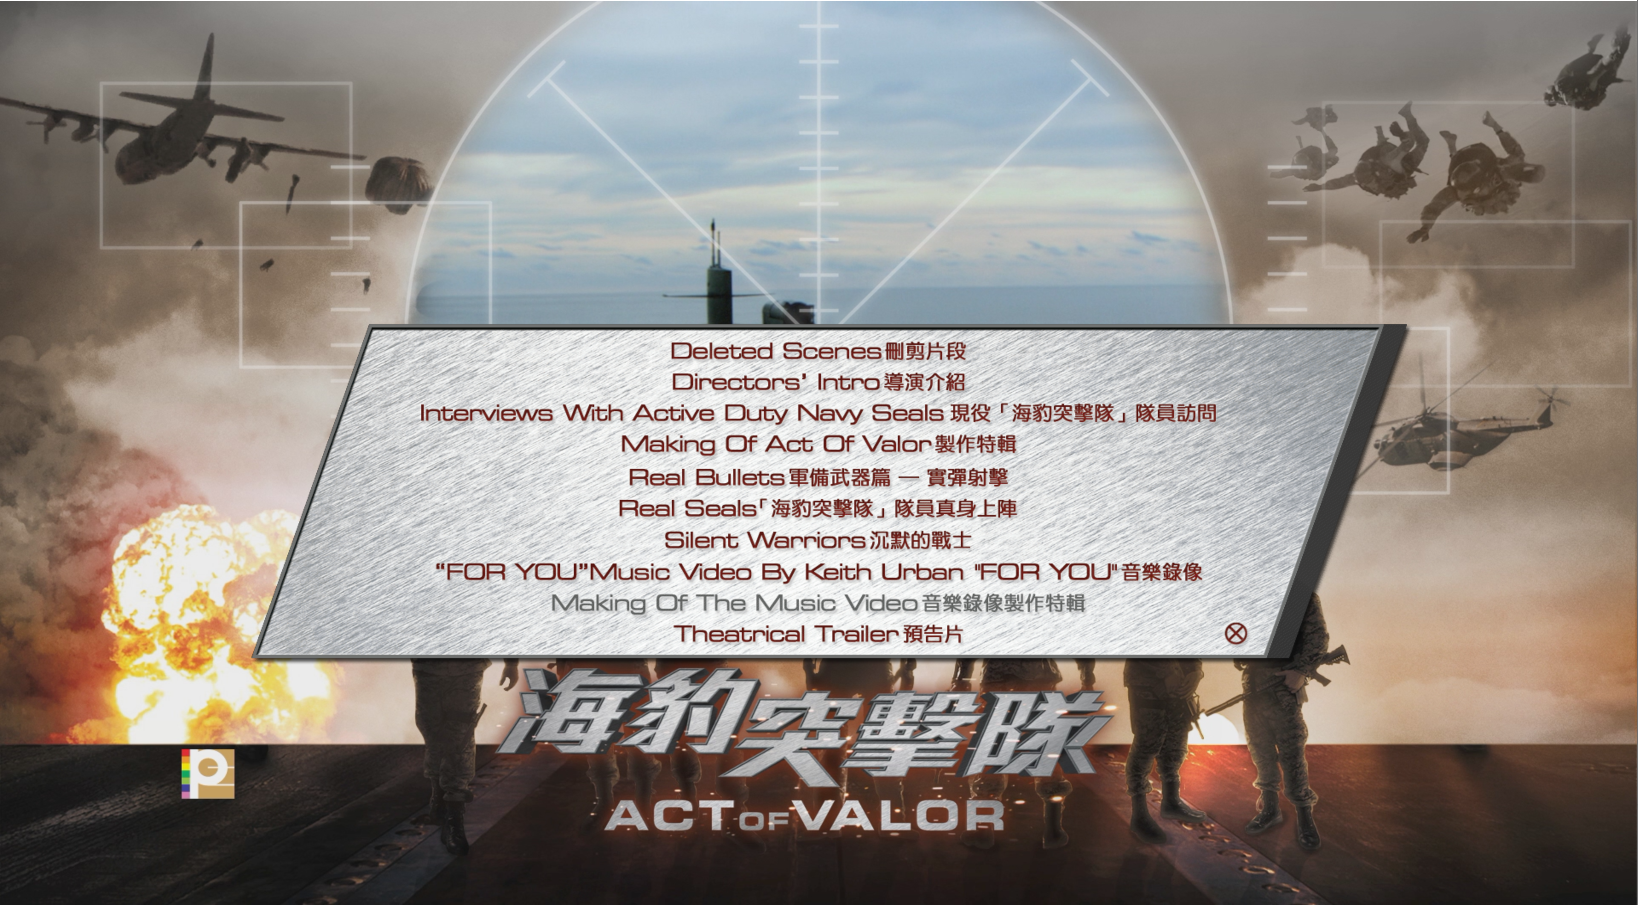 勇者行动/海豹神兵：英勇行动(台)/海豹突击队(港) 【全BDJ菜单重制/简繁特效/双语特效】 Act of Valor 2012 Blu-ray 1080p AVC TrueHD 7.1-LianHH@CHDBits [39.20 GB]-6.png